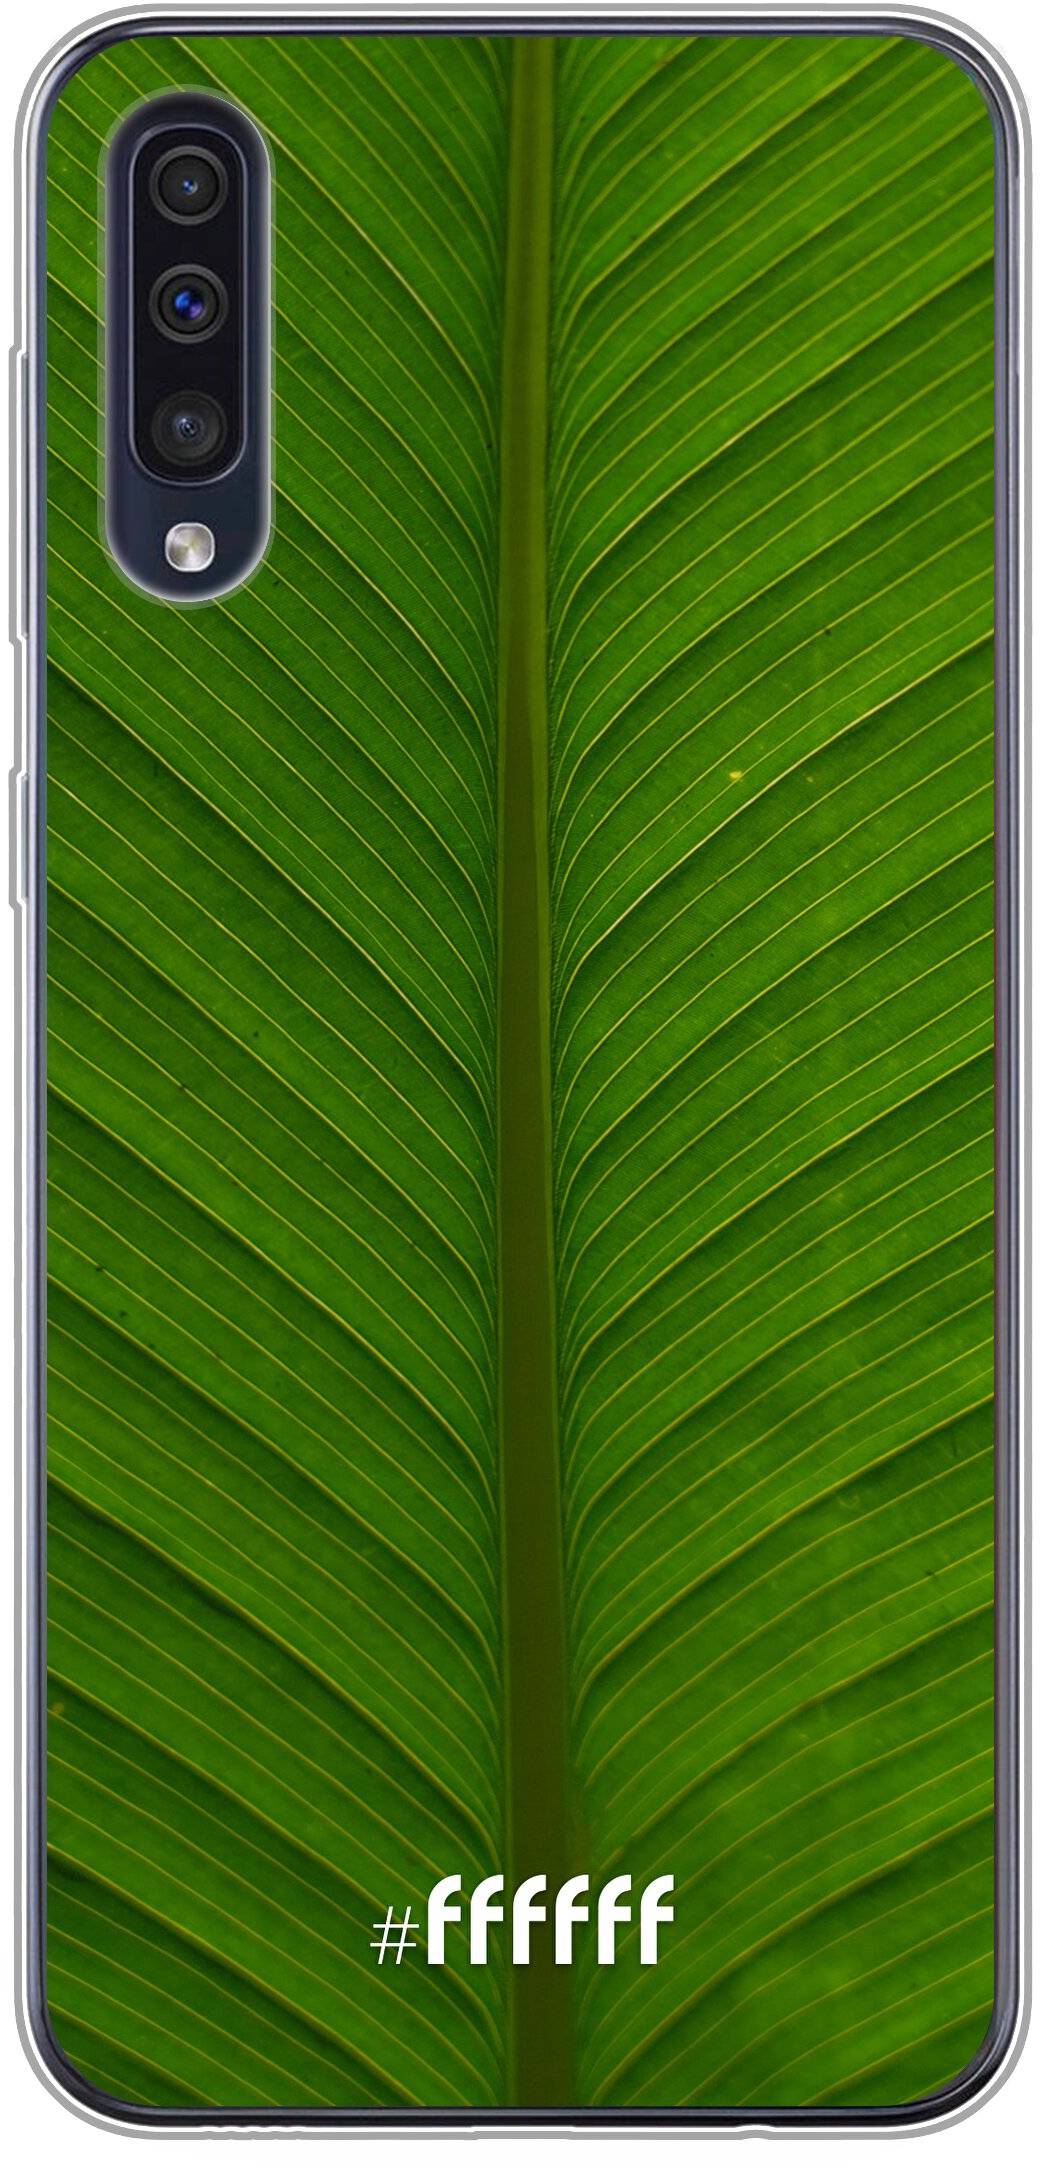 Unseen Green Galaxy A50s